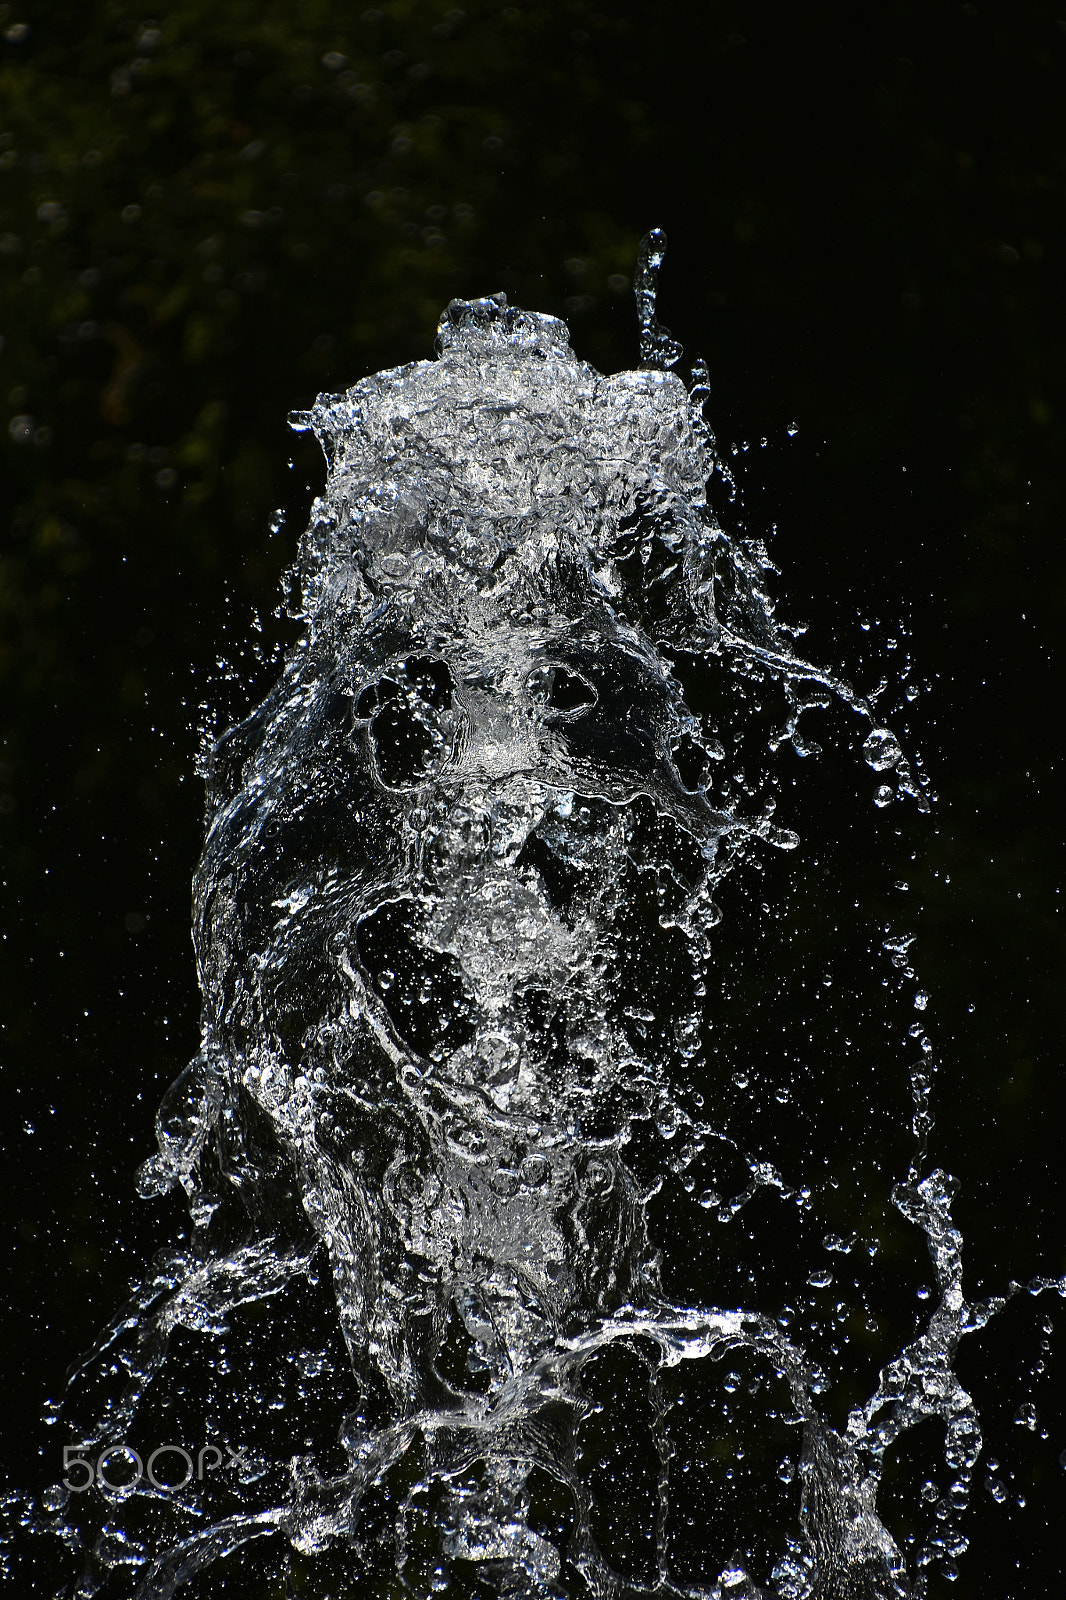 Nikon D5500 + Nikon AF-S DX Nikkor 18-300mm F3.5-6.3G ED VR sample photo. Water stream with splash over black background photography